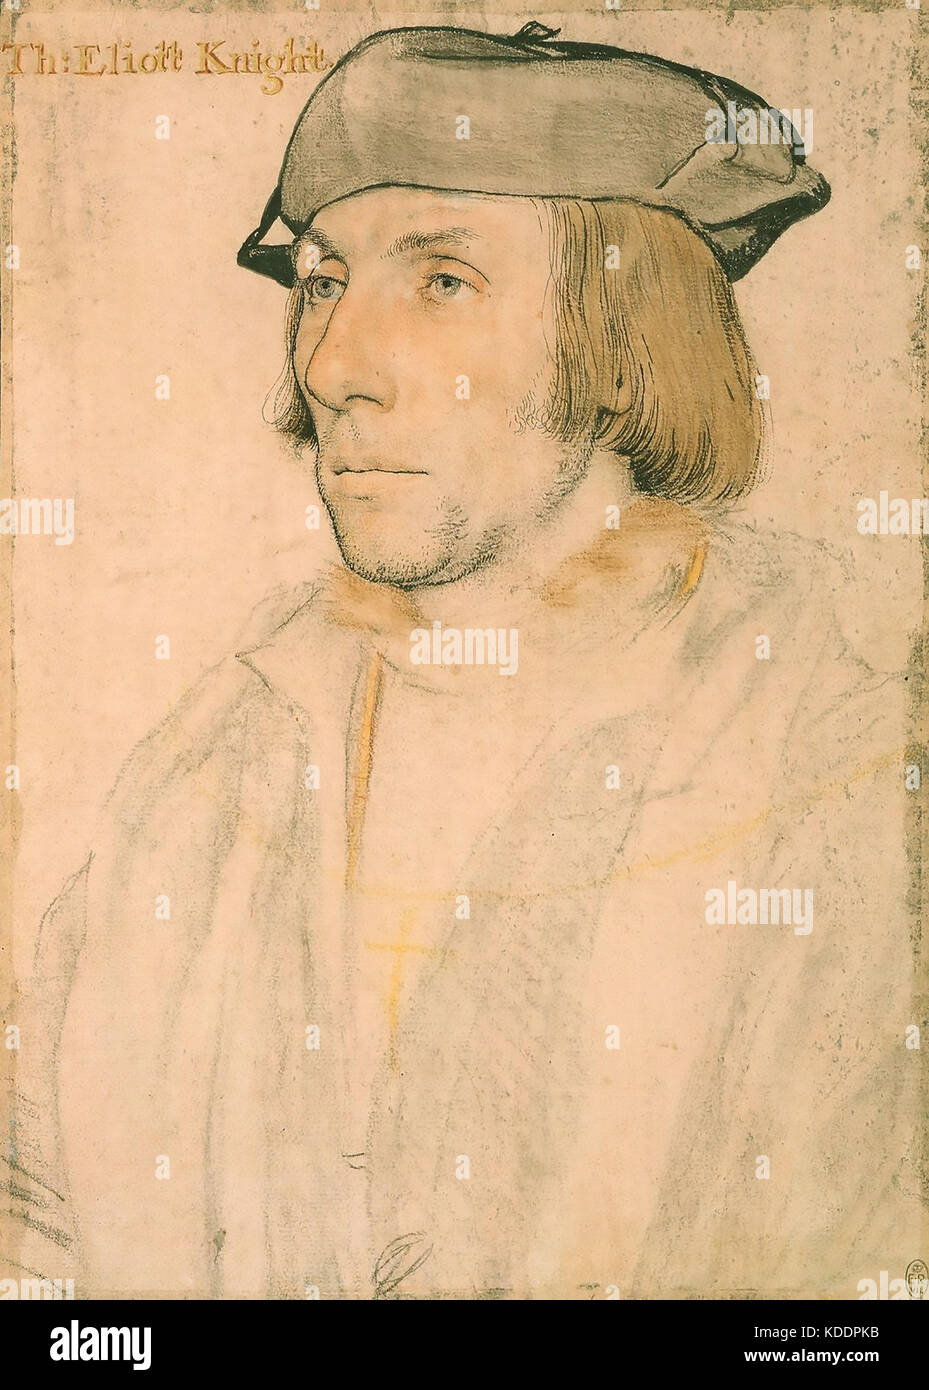 Thomas ELIOT (c 1490-1546) studioso e diplomatico inglese, tratto da Hans Holbein. Originale nella Royal Collection. Foto Stock